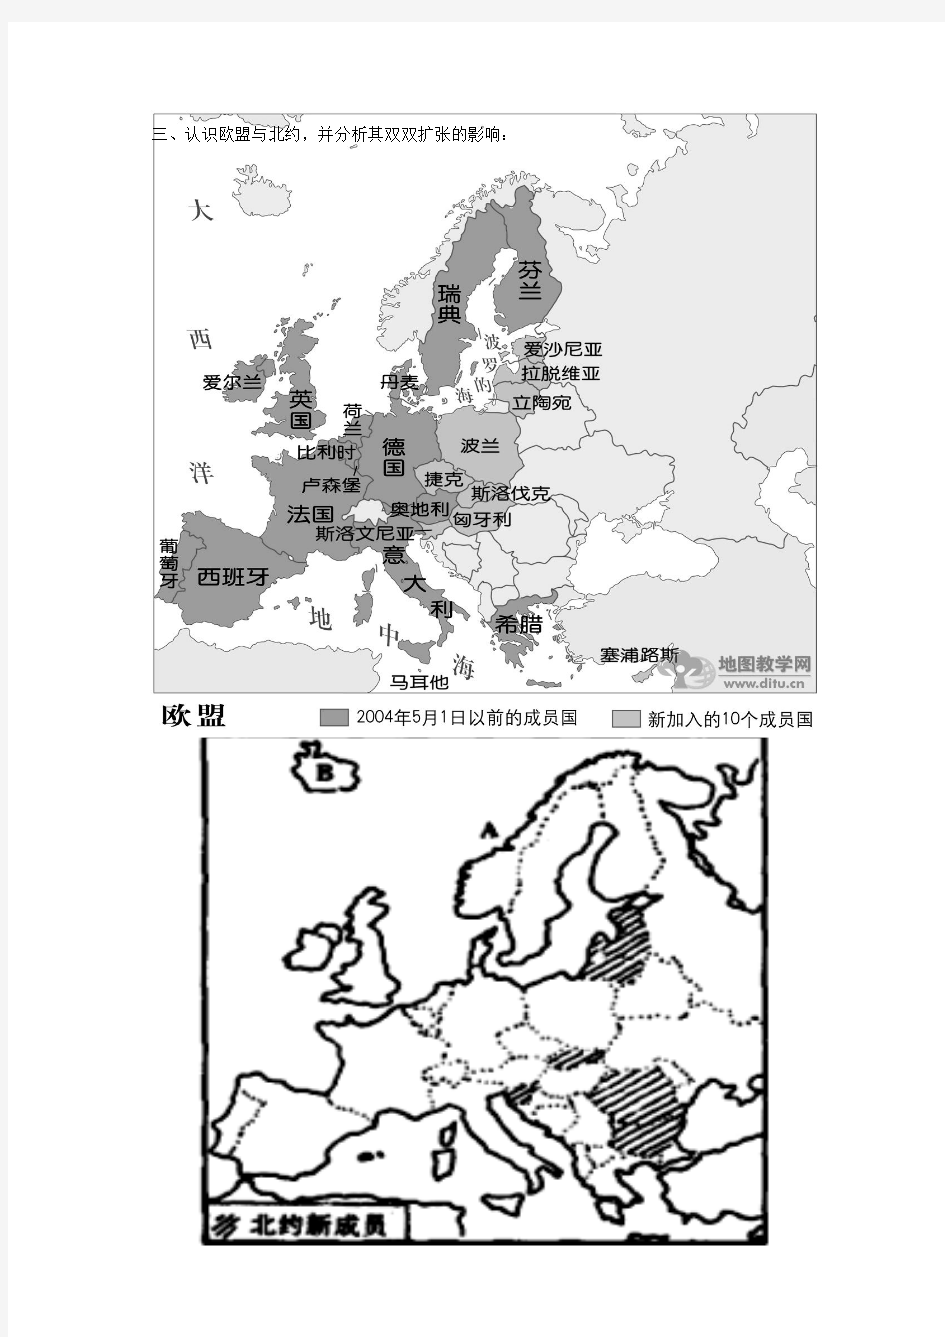 地理读图填图练习：欧洲及欧洲西部2